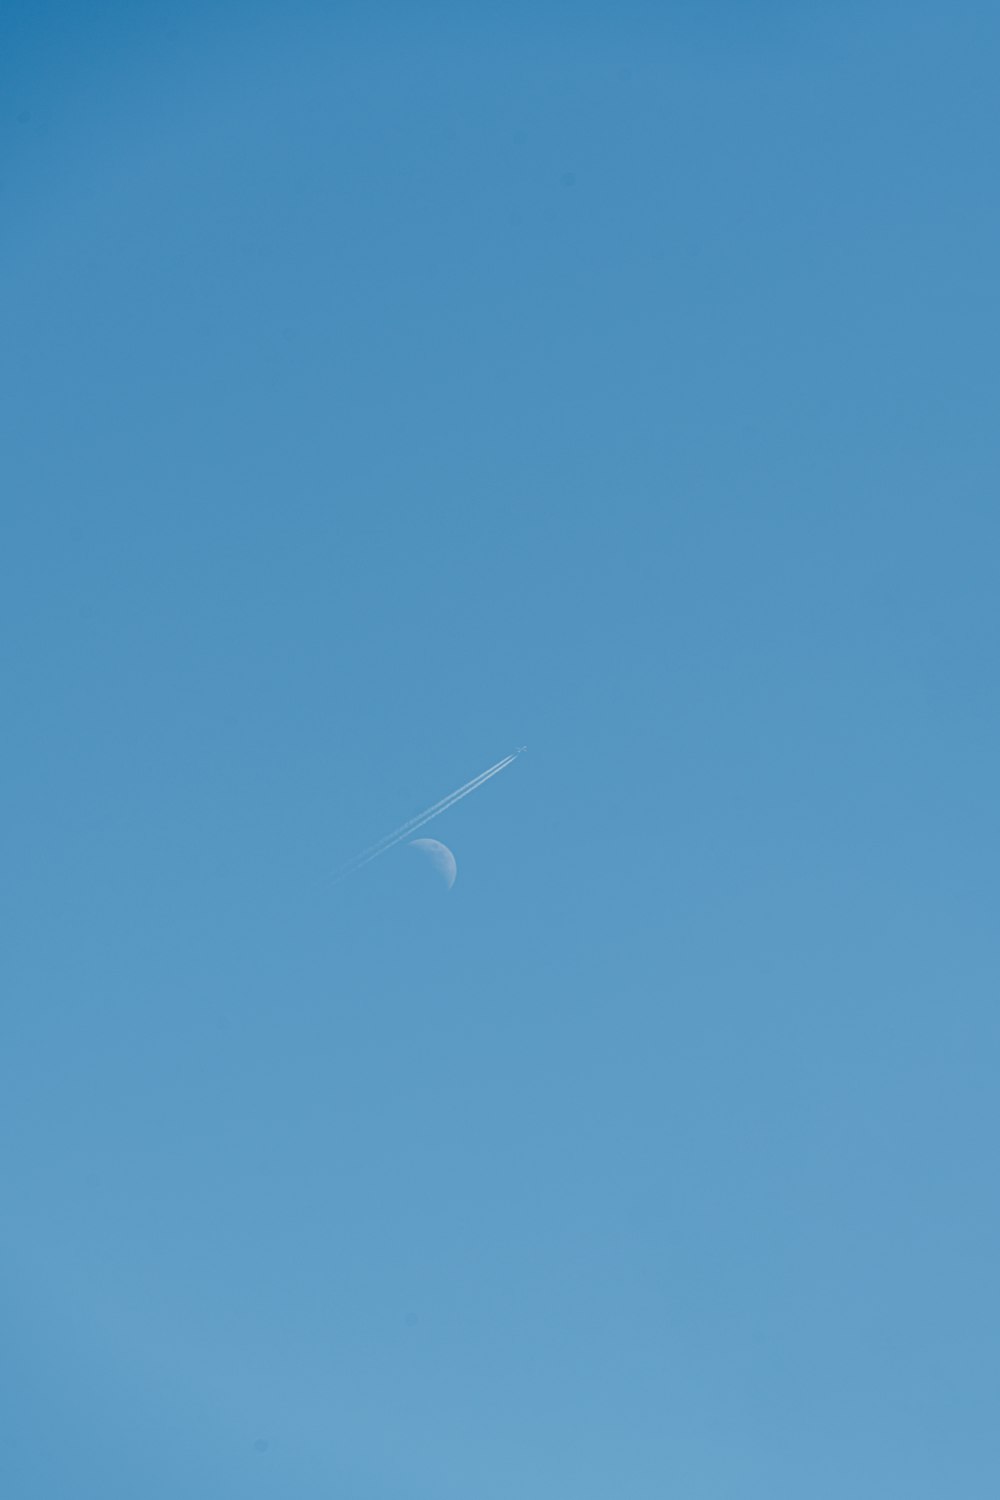 ein Flugzeug, das in einem klaren blauen Himmel fliegt